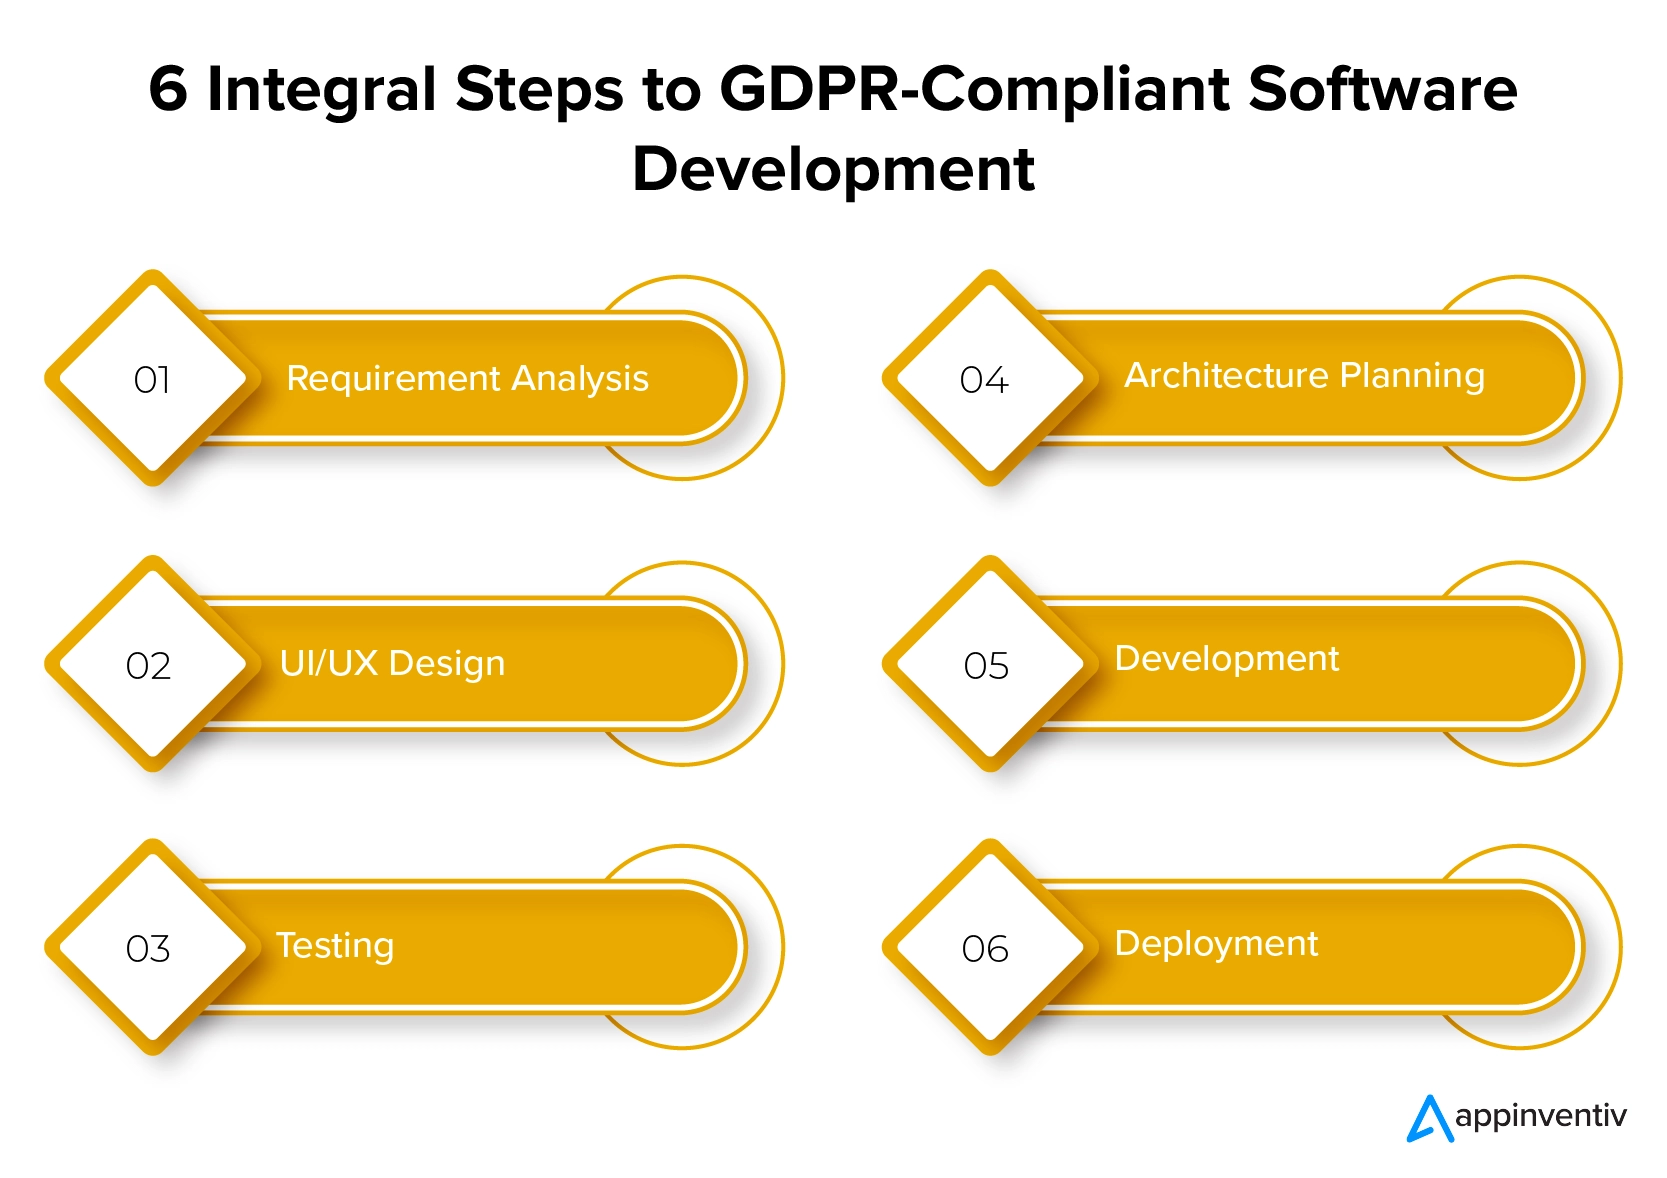 符合 GDPR 要求的软件开发的 6 个完整步骤